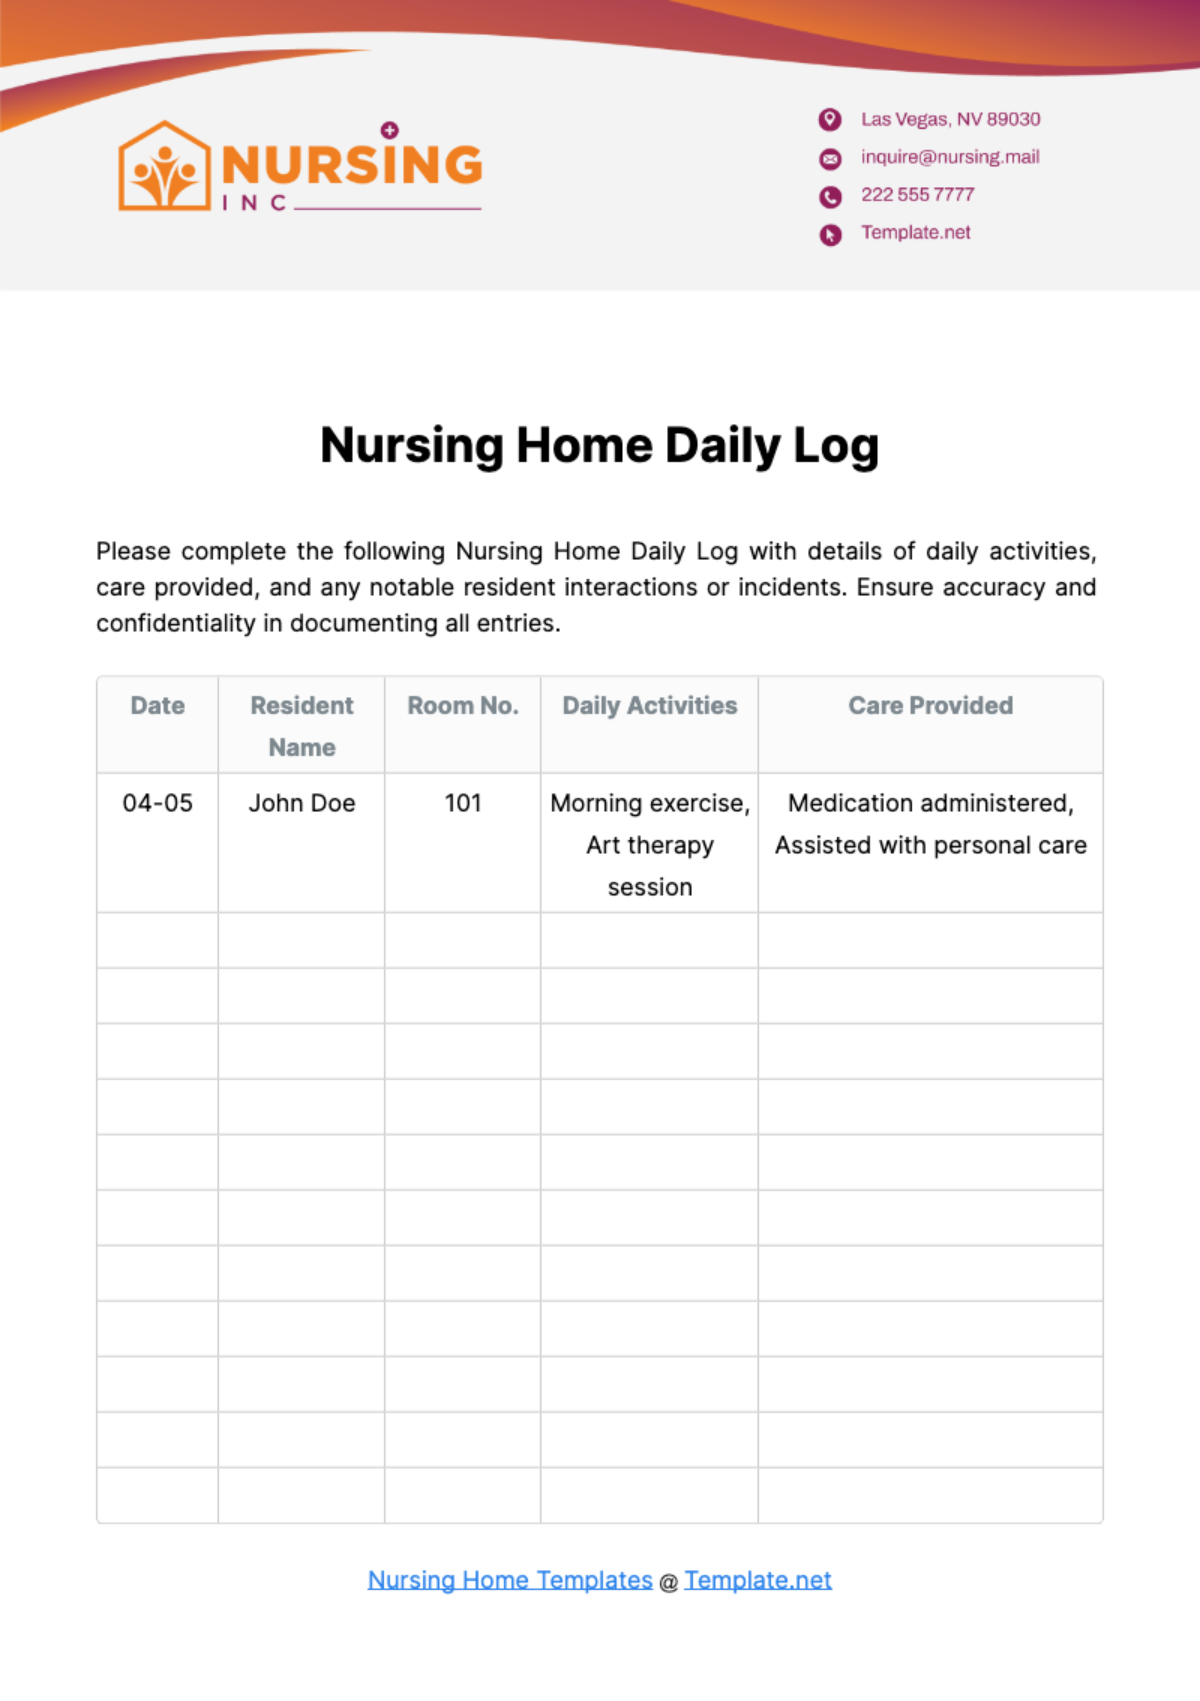 Nursing Home Daily Log Template